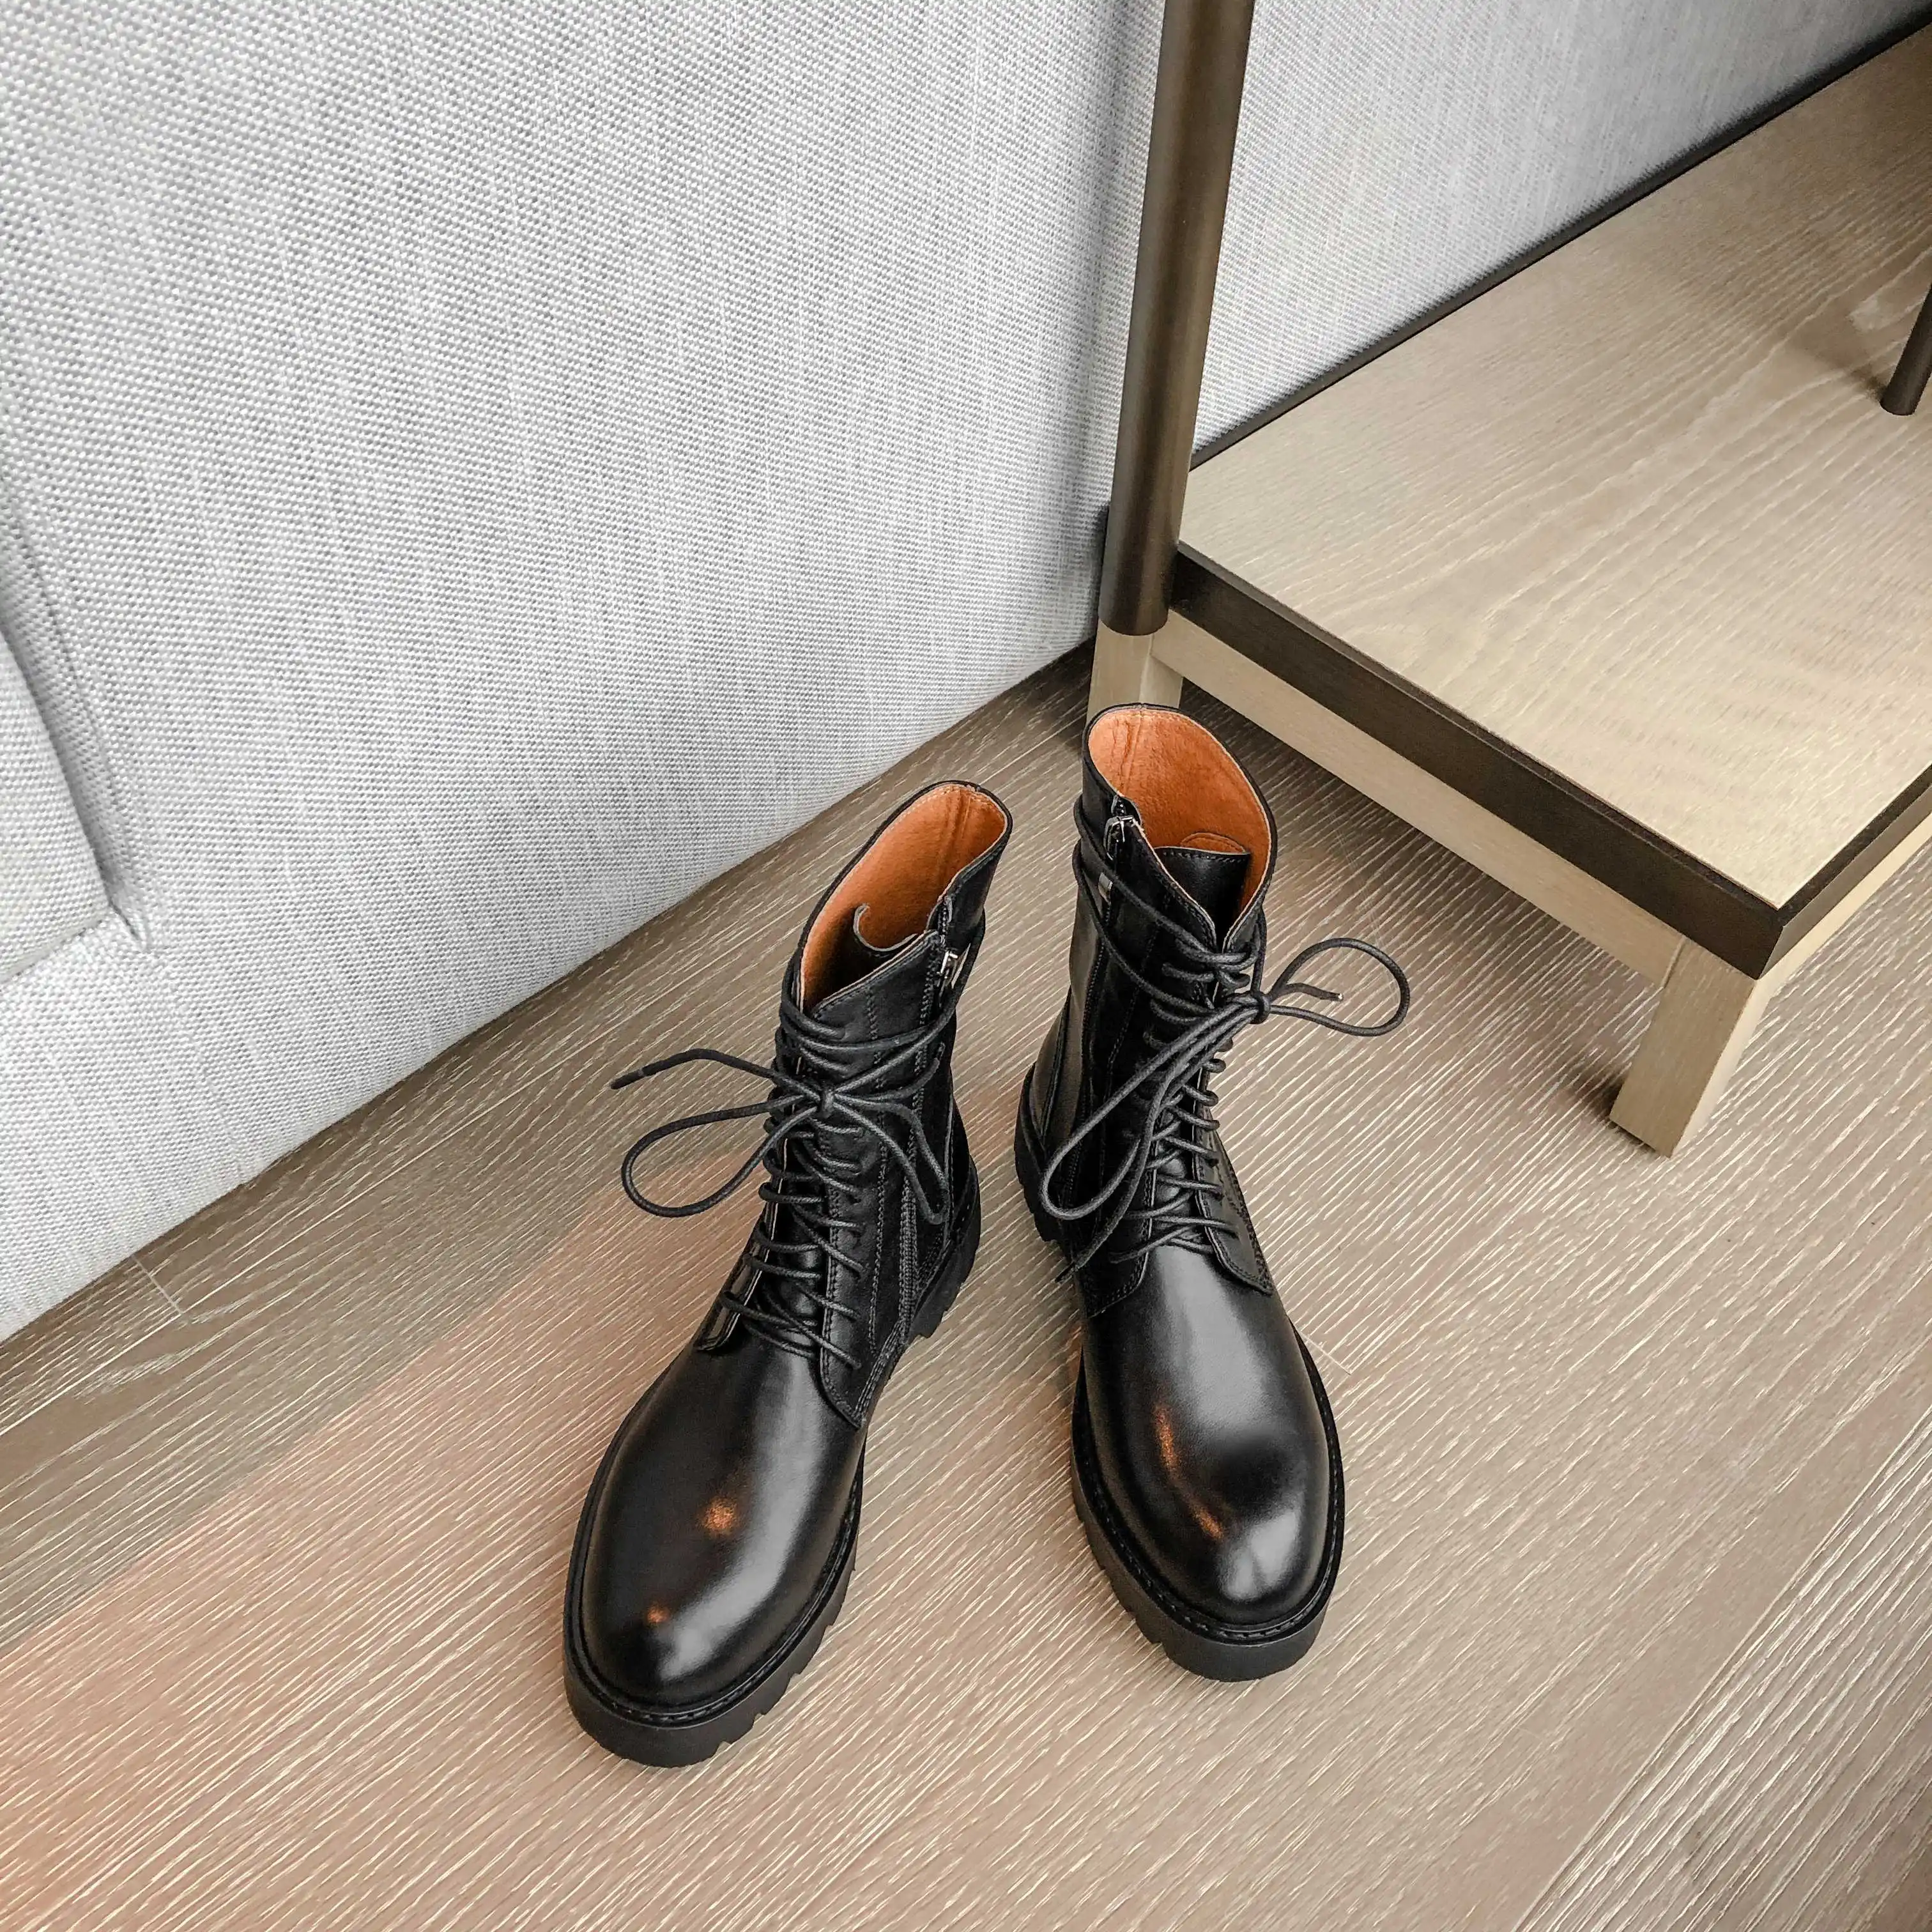 Krazing pot/Повседневная обувь черного цвета из натуральной кожи, с круглым носком, на среднем каблуке, с боковой молнией зимние теплые женские сапоги до середины икры, L60